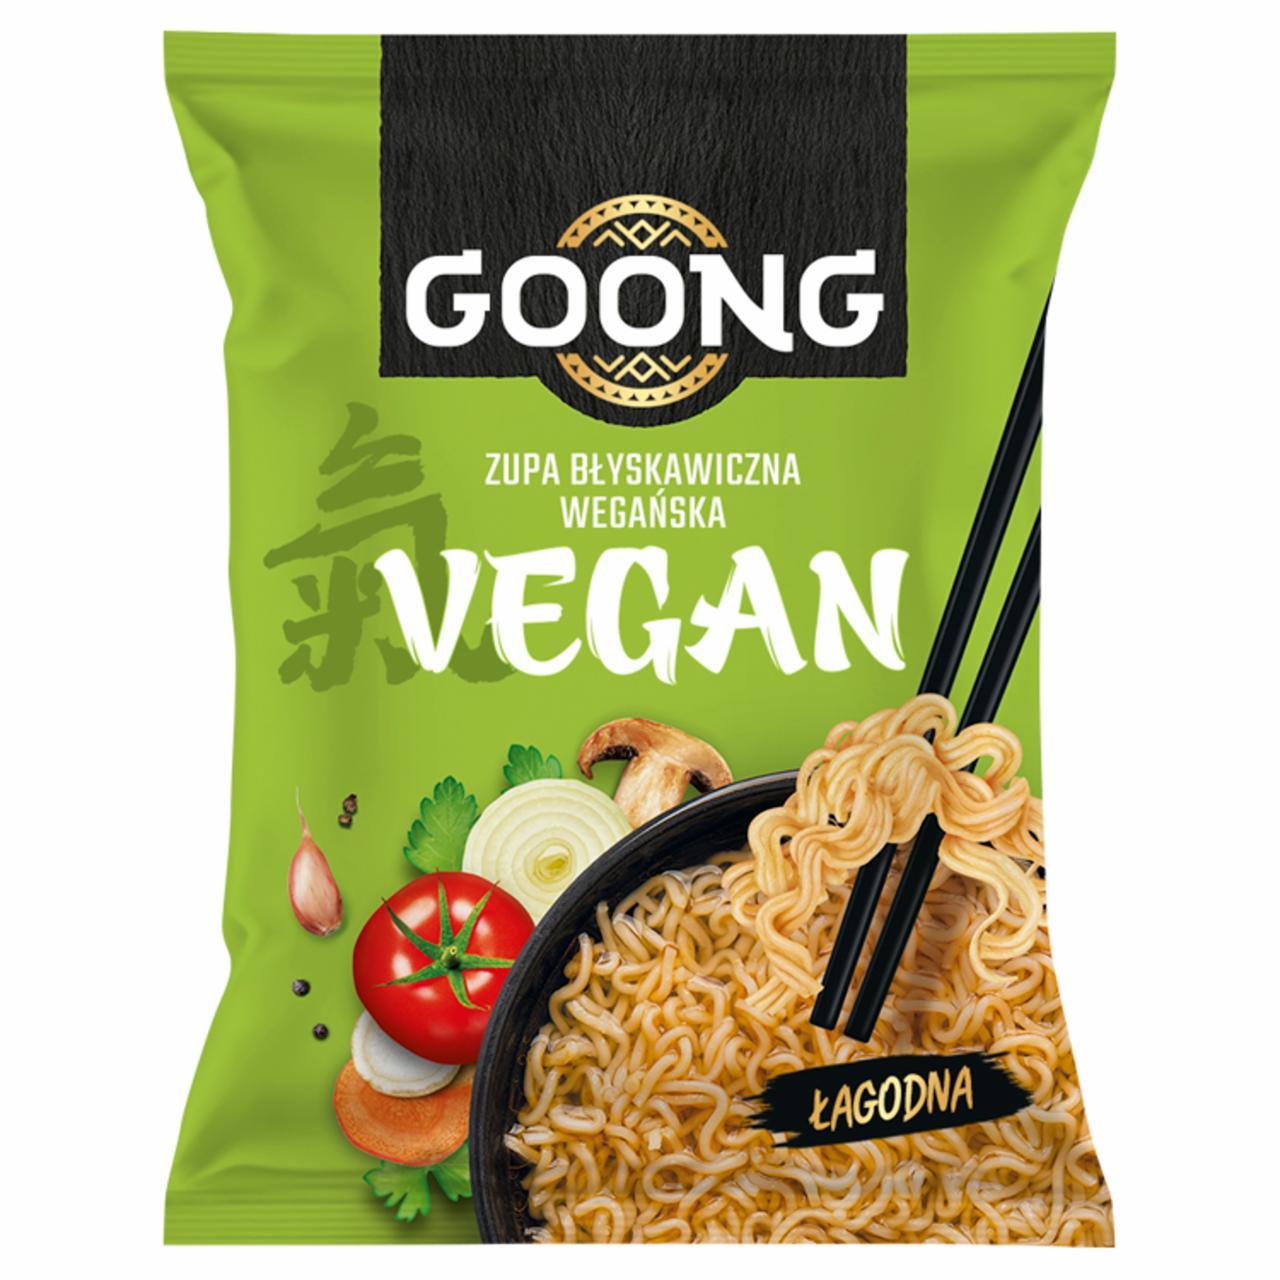 Zdjęcia - Goong Vegan Zupa błyskawiczna wegańska łagodna 65 g